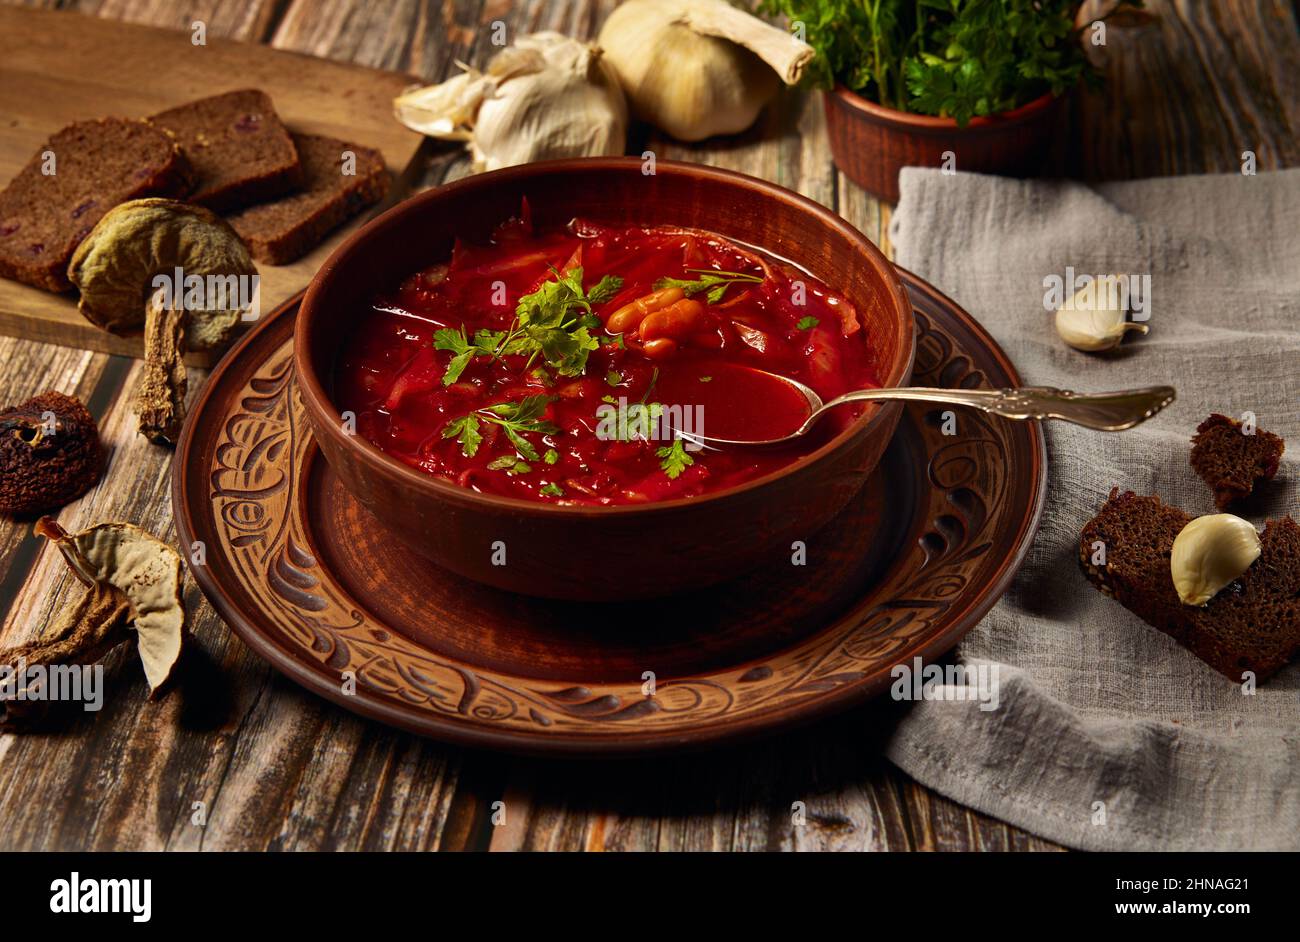 Ukrainische Zisine. Borsch ist eine ukrainische Suppe mit Steinpilzen, Kohl, Rote Beete, Zwiebeln, Karotten und Bohnen. In nationalen Keramikgeschirr mit bre Stockfoto